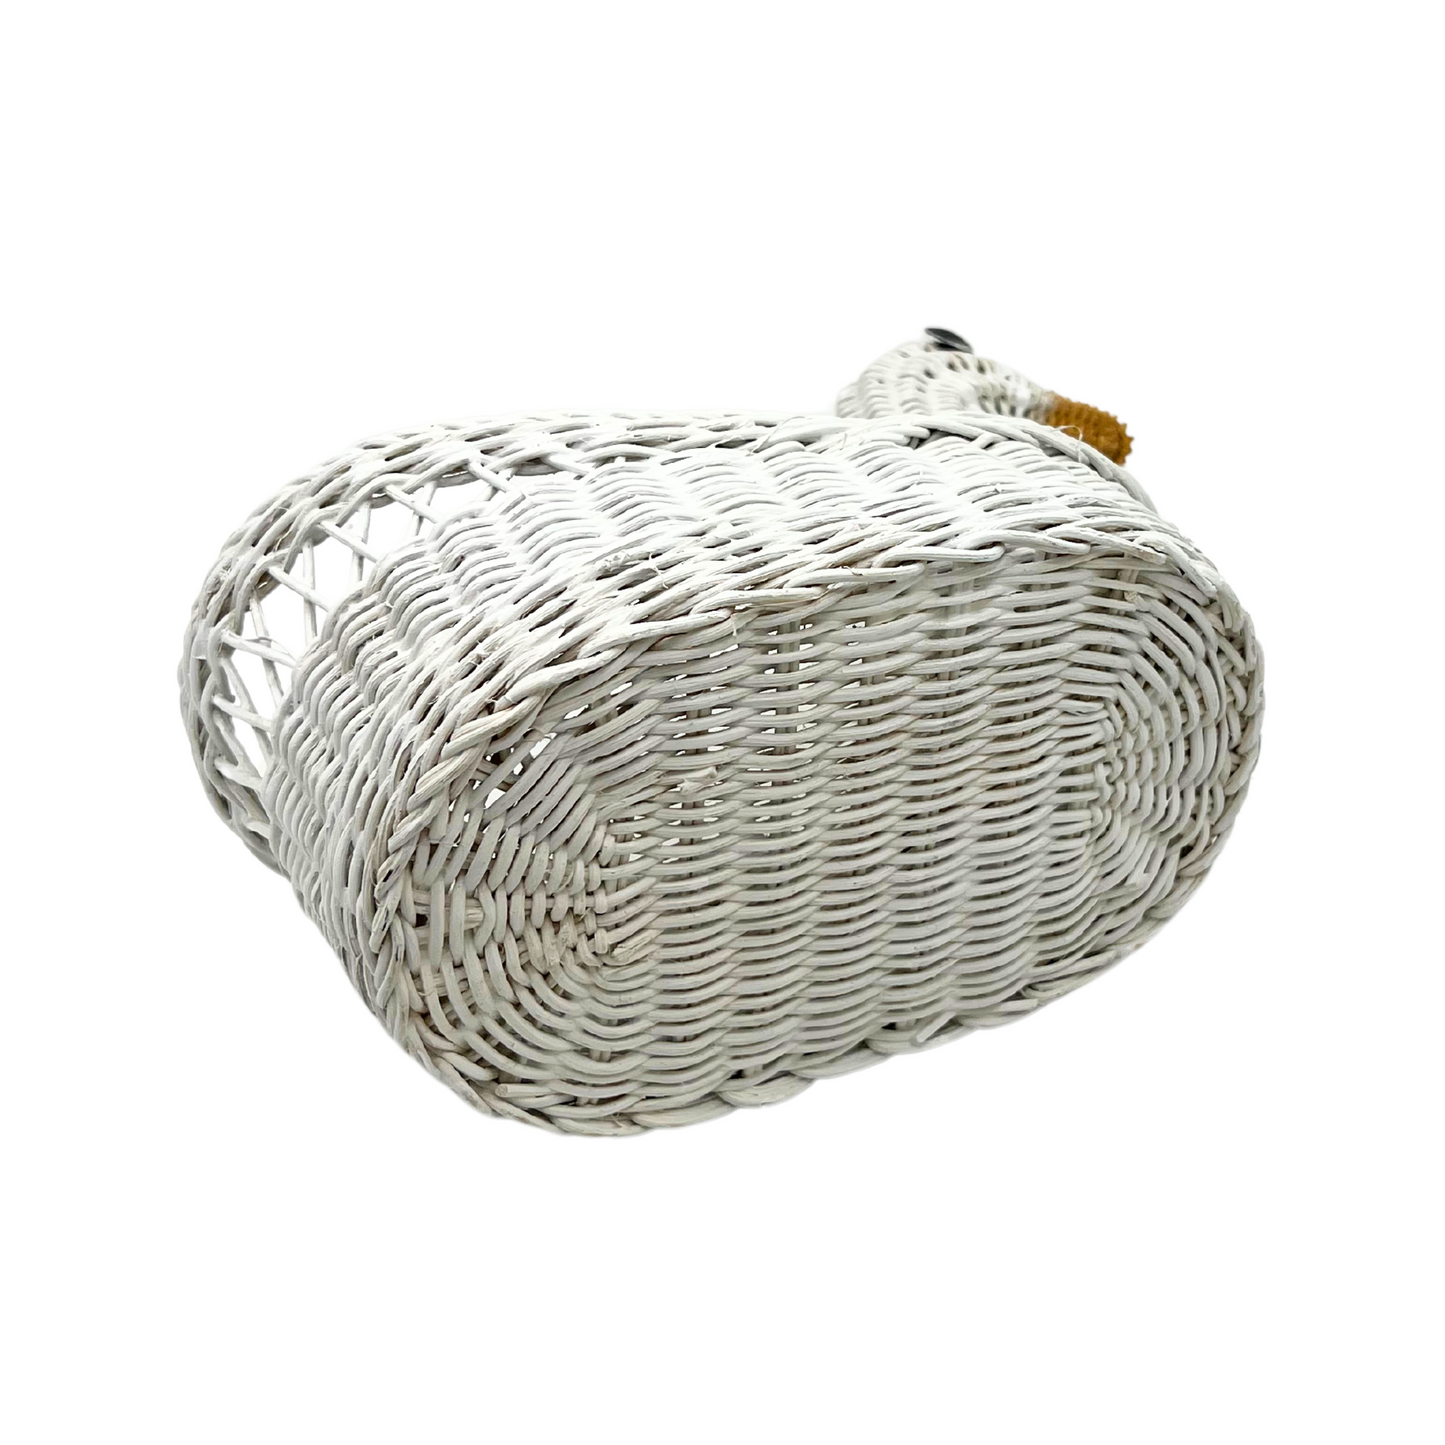 vintage white duck wicker basket